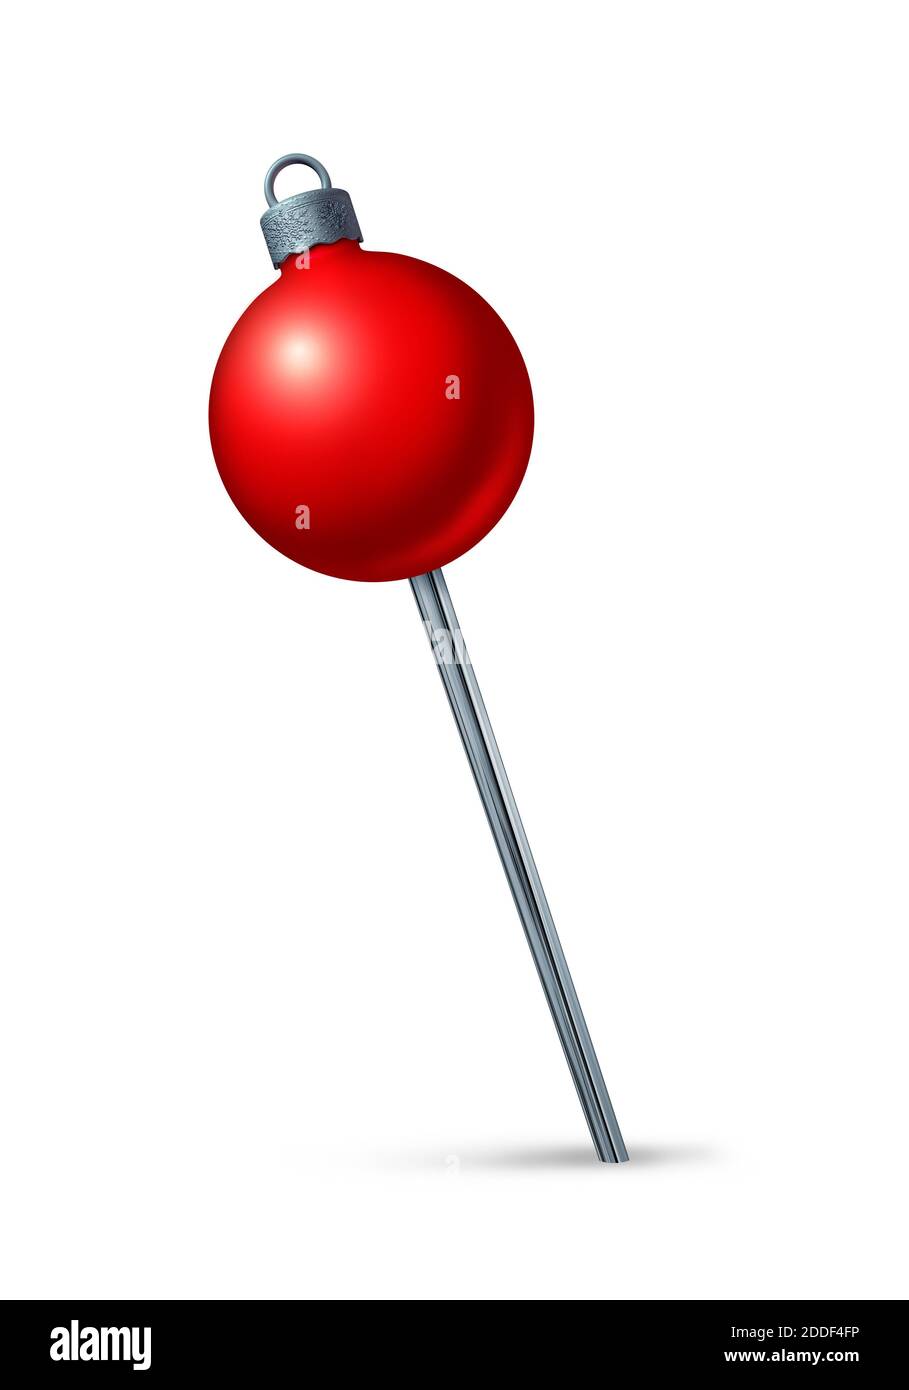 Weihnachtlicher roter Pushpin als weihnachtliches Navigationssymbol für Winterreisen und festliche Weihnachtslocation oder saisonale Party-Position als 3D-Render. Stockfoto